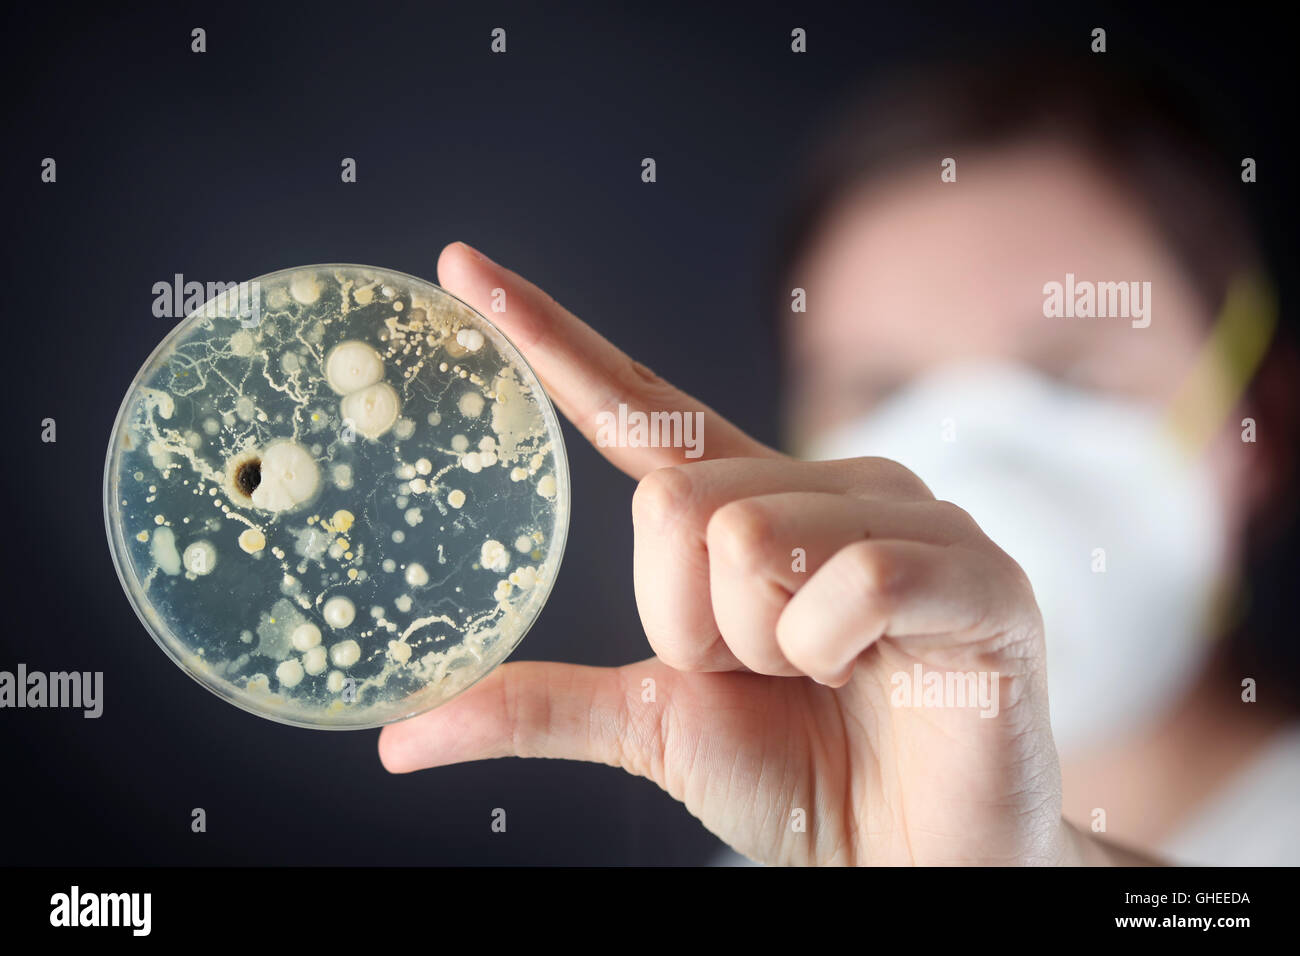 Examining bacteria in a petri dish Stock Photo